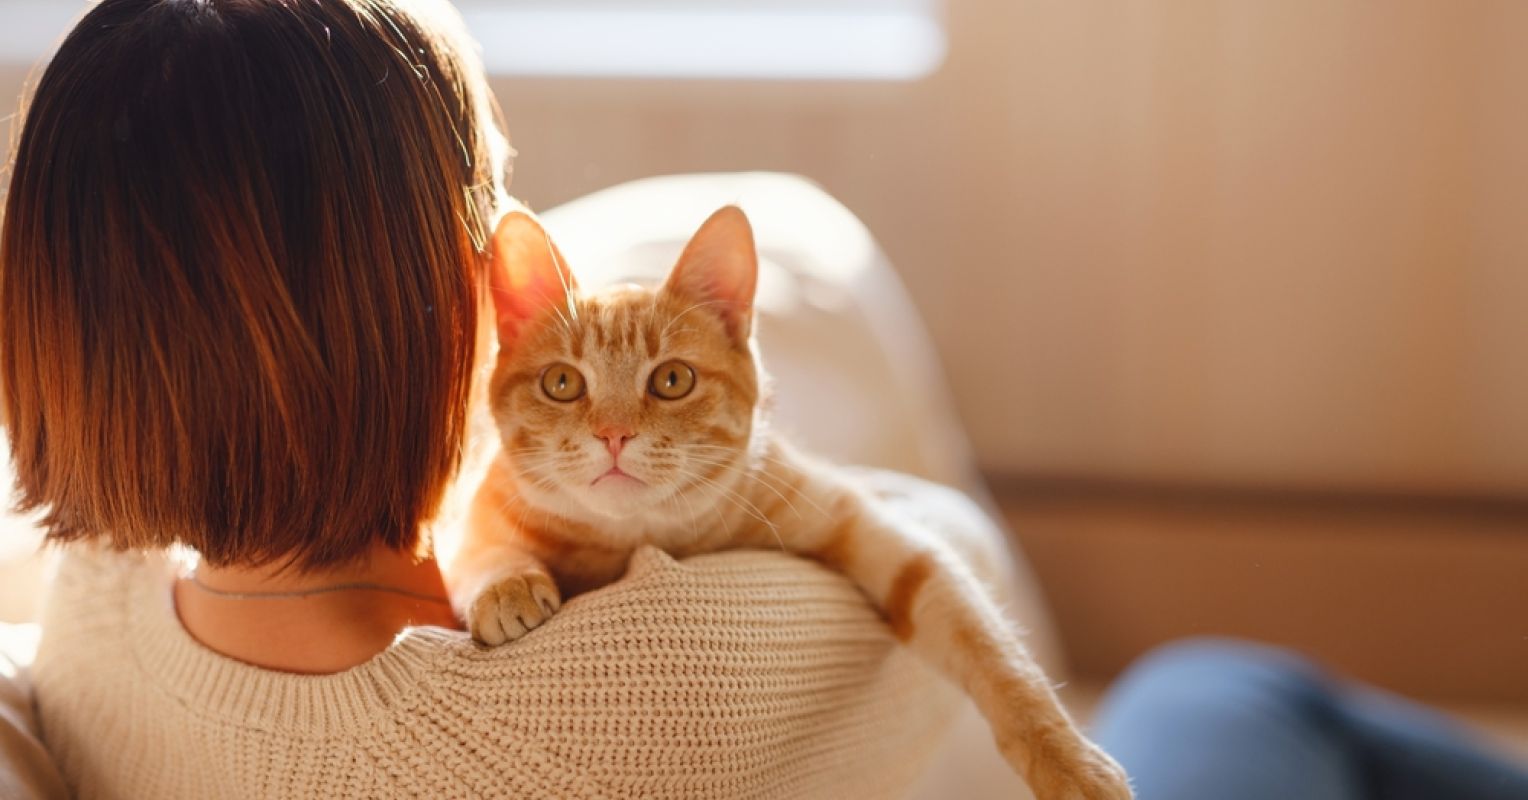 6 Misconceptions About Cat Behavior That Deserve a Rethink